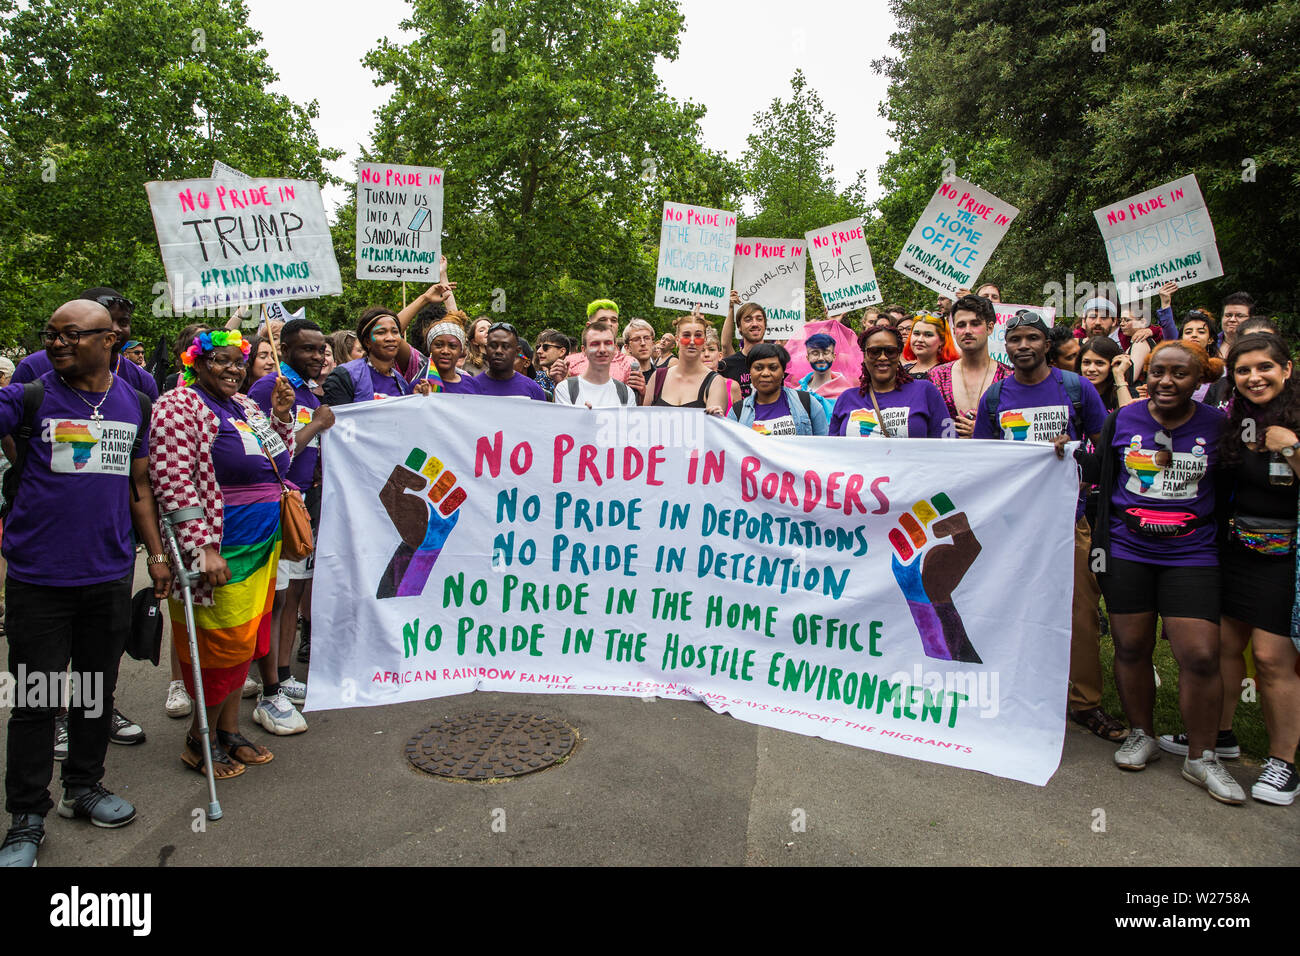 Londres, Royaume-Uni. 6 juillet, 2019. Des militants de Gays et Lesbiennes, soutenir les migrants, arc-en-ciel d'Afrique, l'extérieur de la famille, Projet Arc-en-ciel Micro et beaucoup d'autres groupes LGBT se préparent à prendre part à une marche de solidarité Fierté de Londres à l'arrière de la fierté de Londres - stewards a essayé de les empêcher de se joindre à - en solidarité avec ceux pour qui la fierté de Londres est inaccessible et pour protester contre la corporatisation de fierté à Londres. Credit : Mark Kerrison/Alamy Live News Banque D'Images